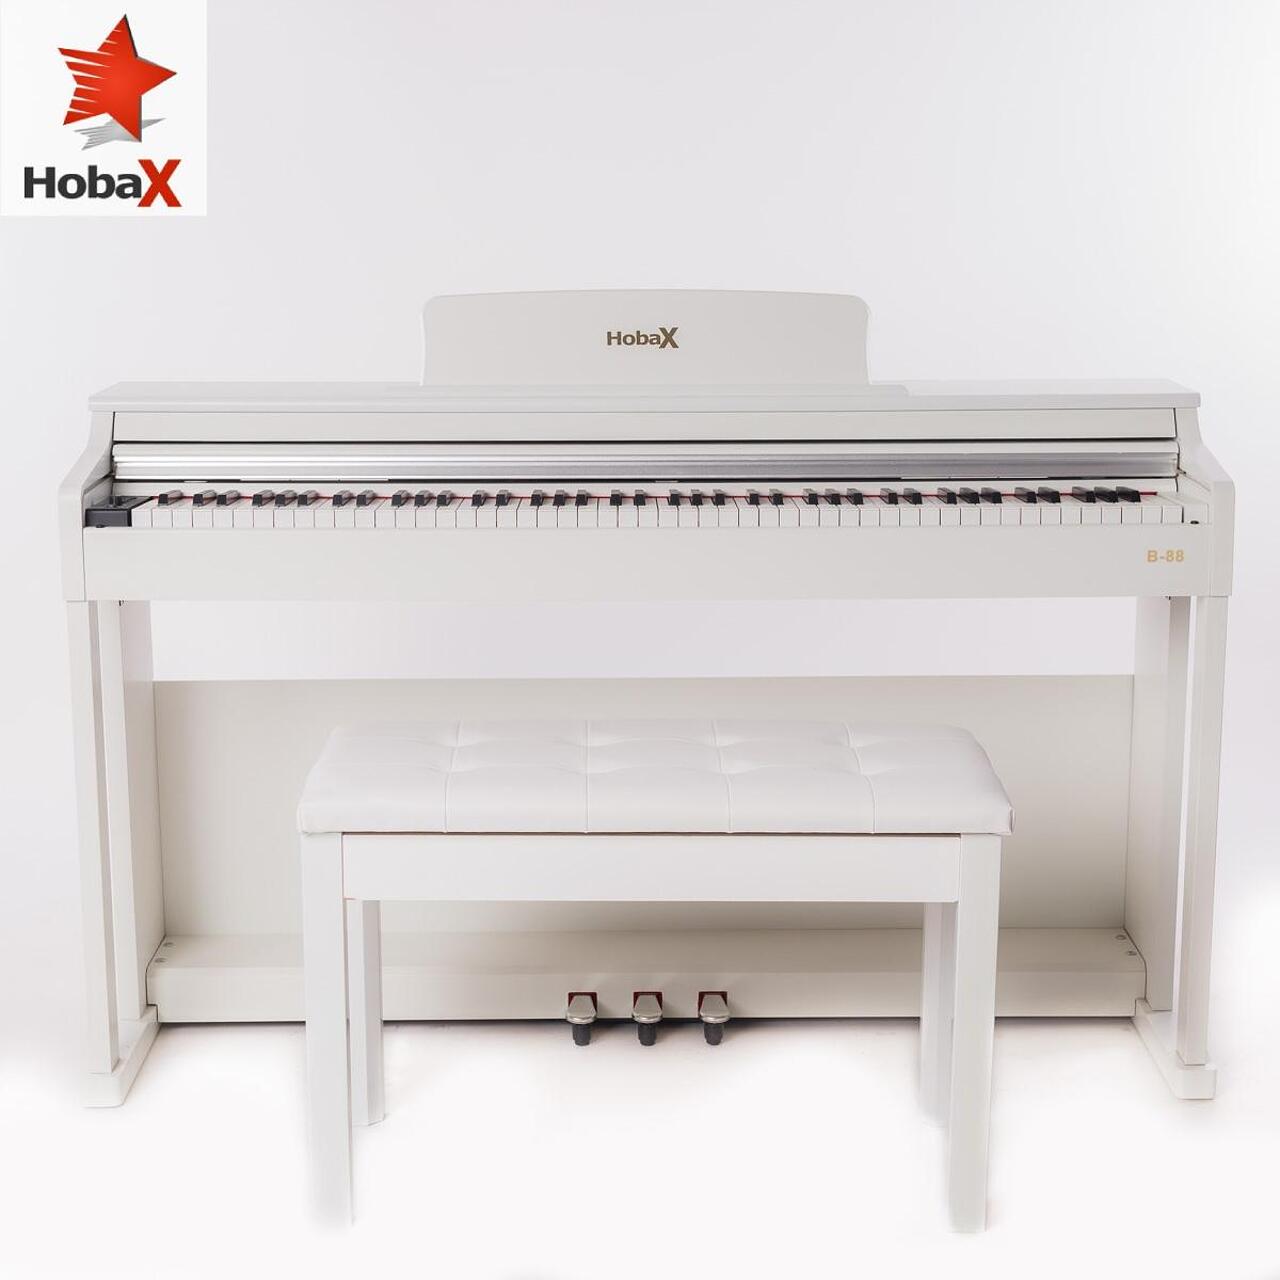 Комплект Дигитално пиано Hobax B-88, БЯЛ цвят, 88 клавиша HAMMER ACTION тежка клавиатура, 7 октави, 8 звуци, 128 ритми, с тройна педалиера. +3 ПОДАРЪКА – слушалки, стикери за клавиши и пейка